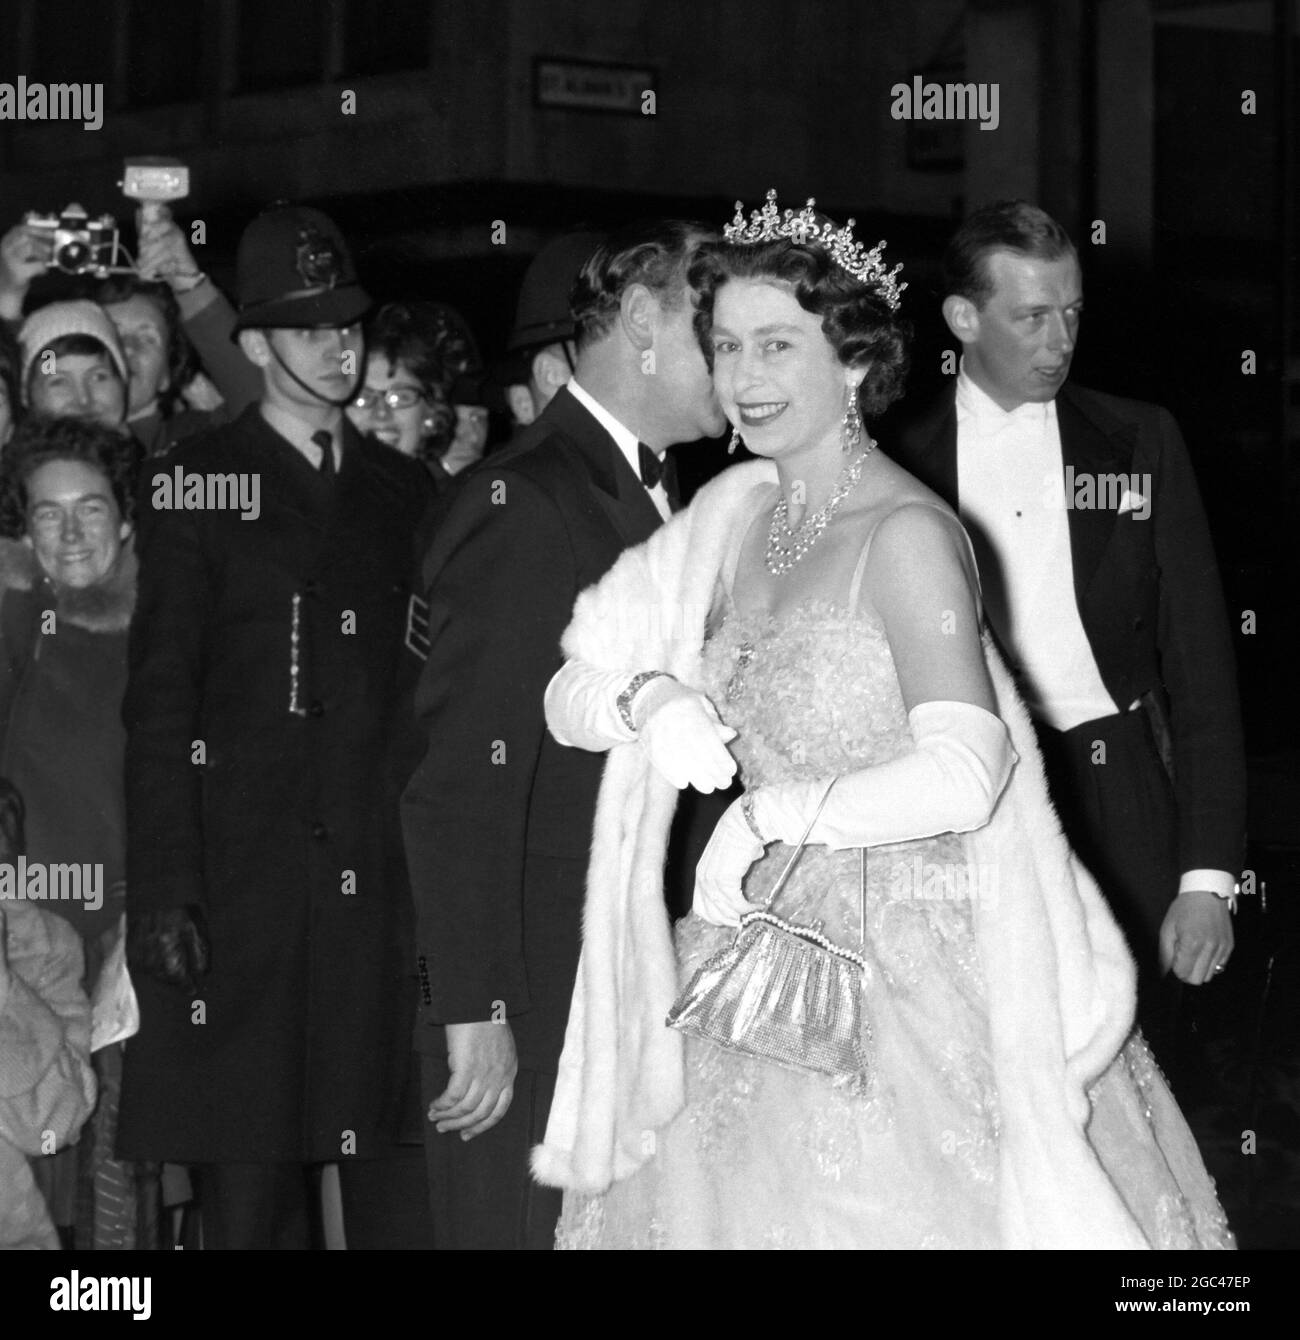 7 FEBBRAIO 1962 LA REGINA ELISABETTA II ARRIVA AL SUO MAJESTY'S THEATRE PER UN'ESECUZIONE DI 'HMS PINAFORE', LONDRA, INGHILTERRA. Foto Stock